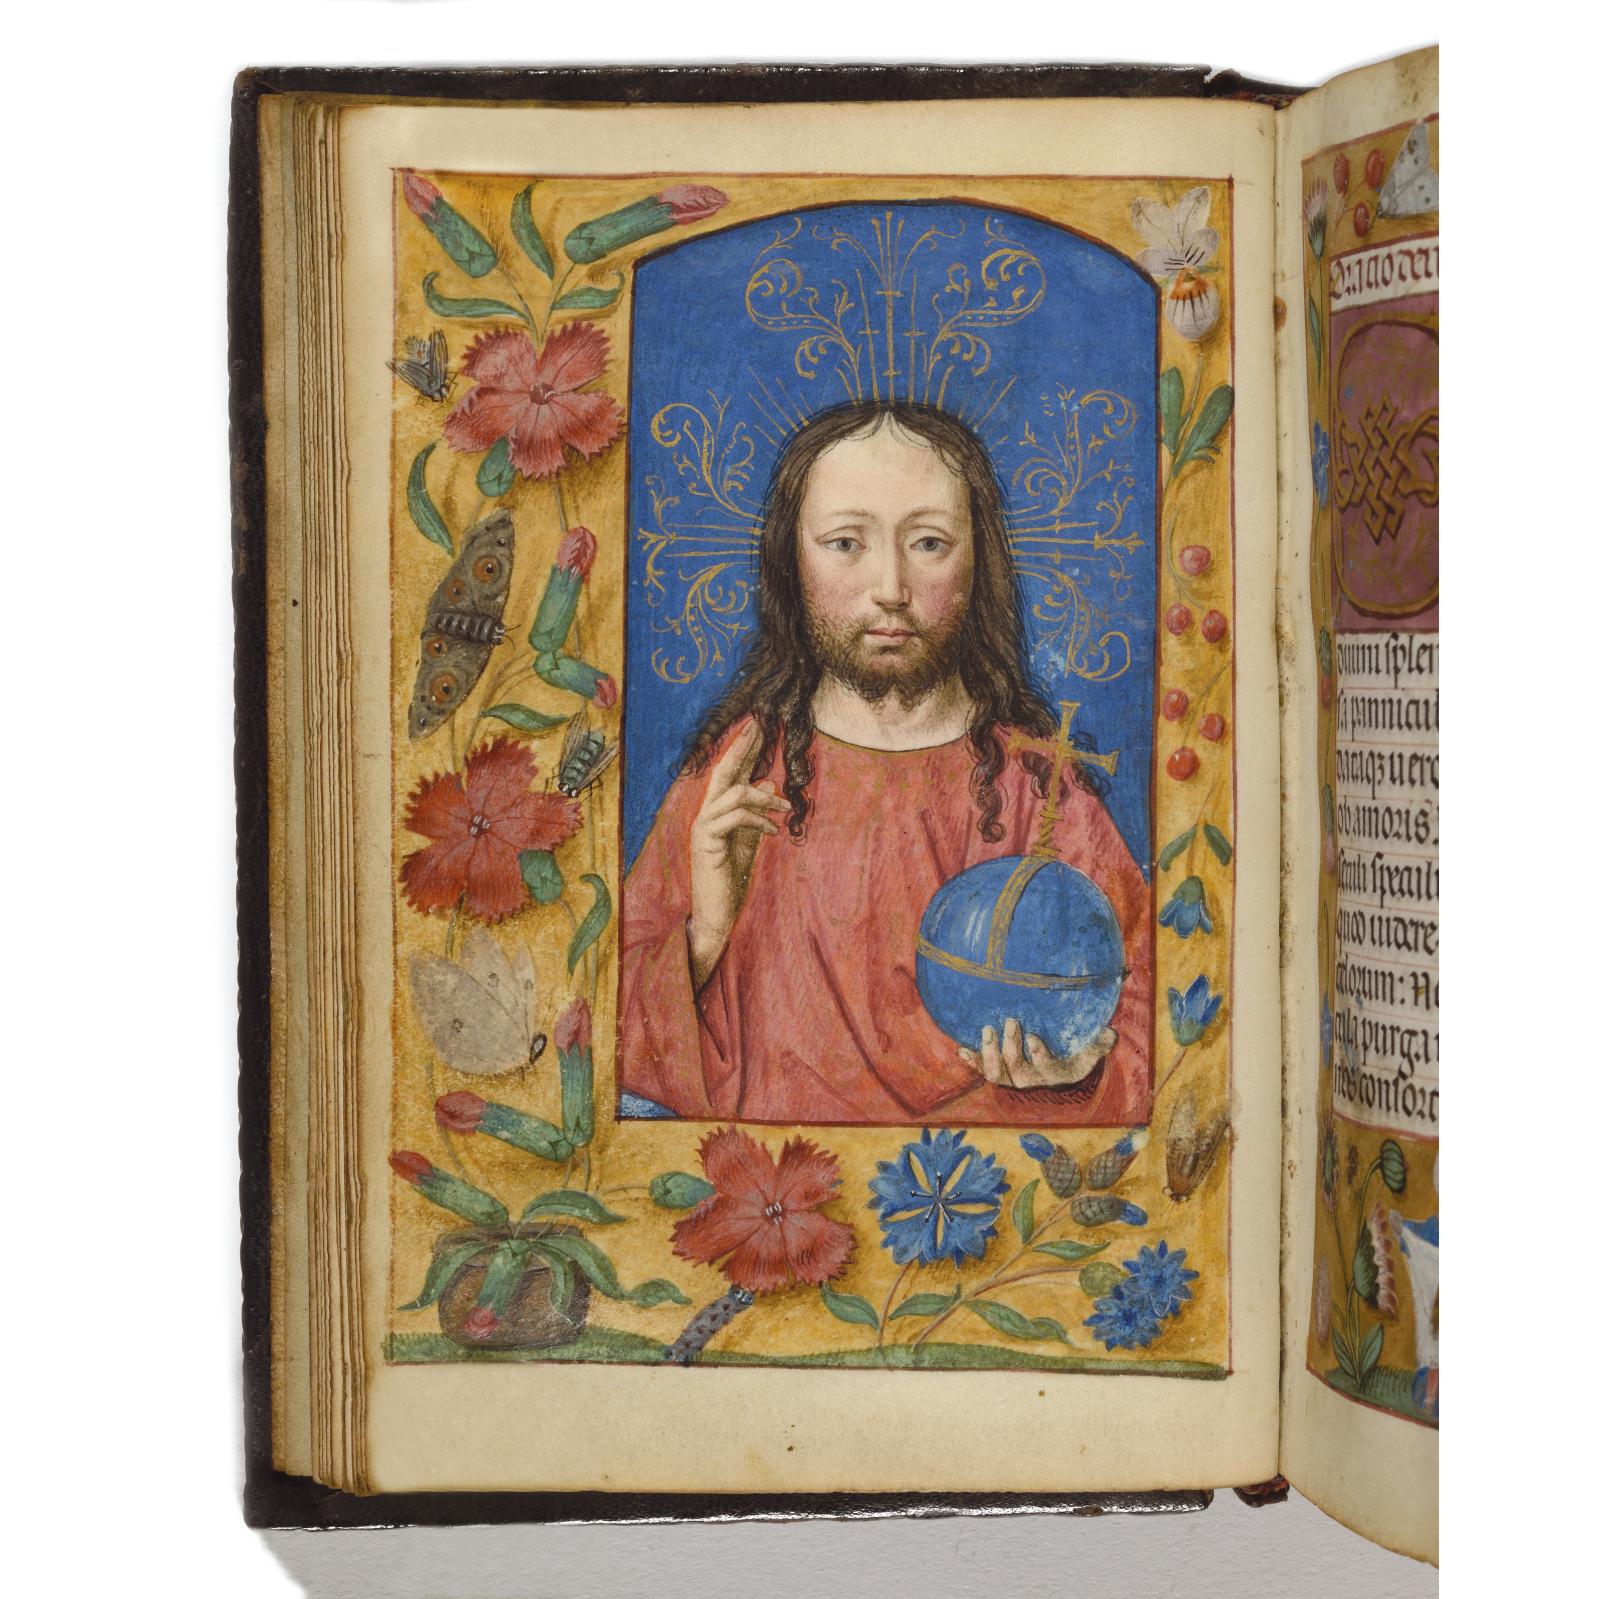 117 500 €Premier quart du XVIe siècle, atelier ganto-brugeois de Simon Bening, livre d’heures en latin à l’usage d’Utrecht, manuscrit enlu